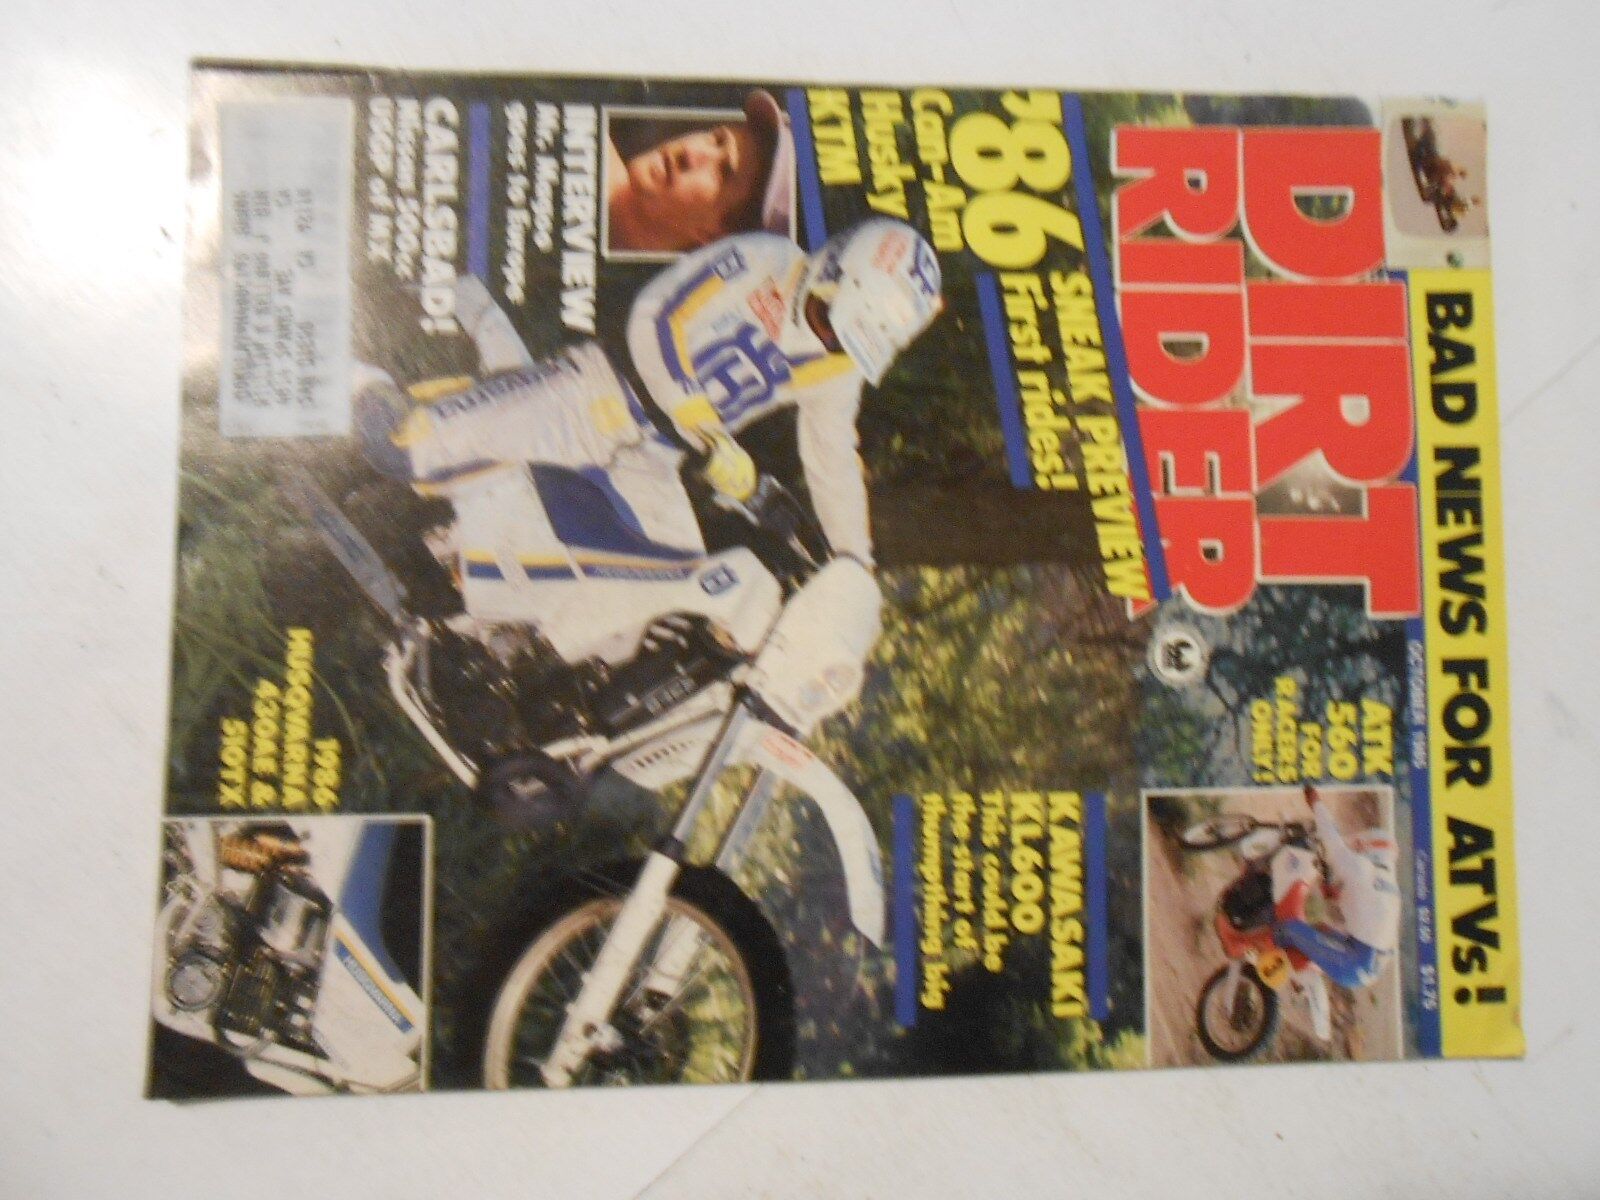 OCTOBER 1985 DIRT RIDER MAGAZINE,MR.MAGOO, CAN-AM,HUSKY,KTM FOR 1986,CARLSBAD